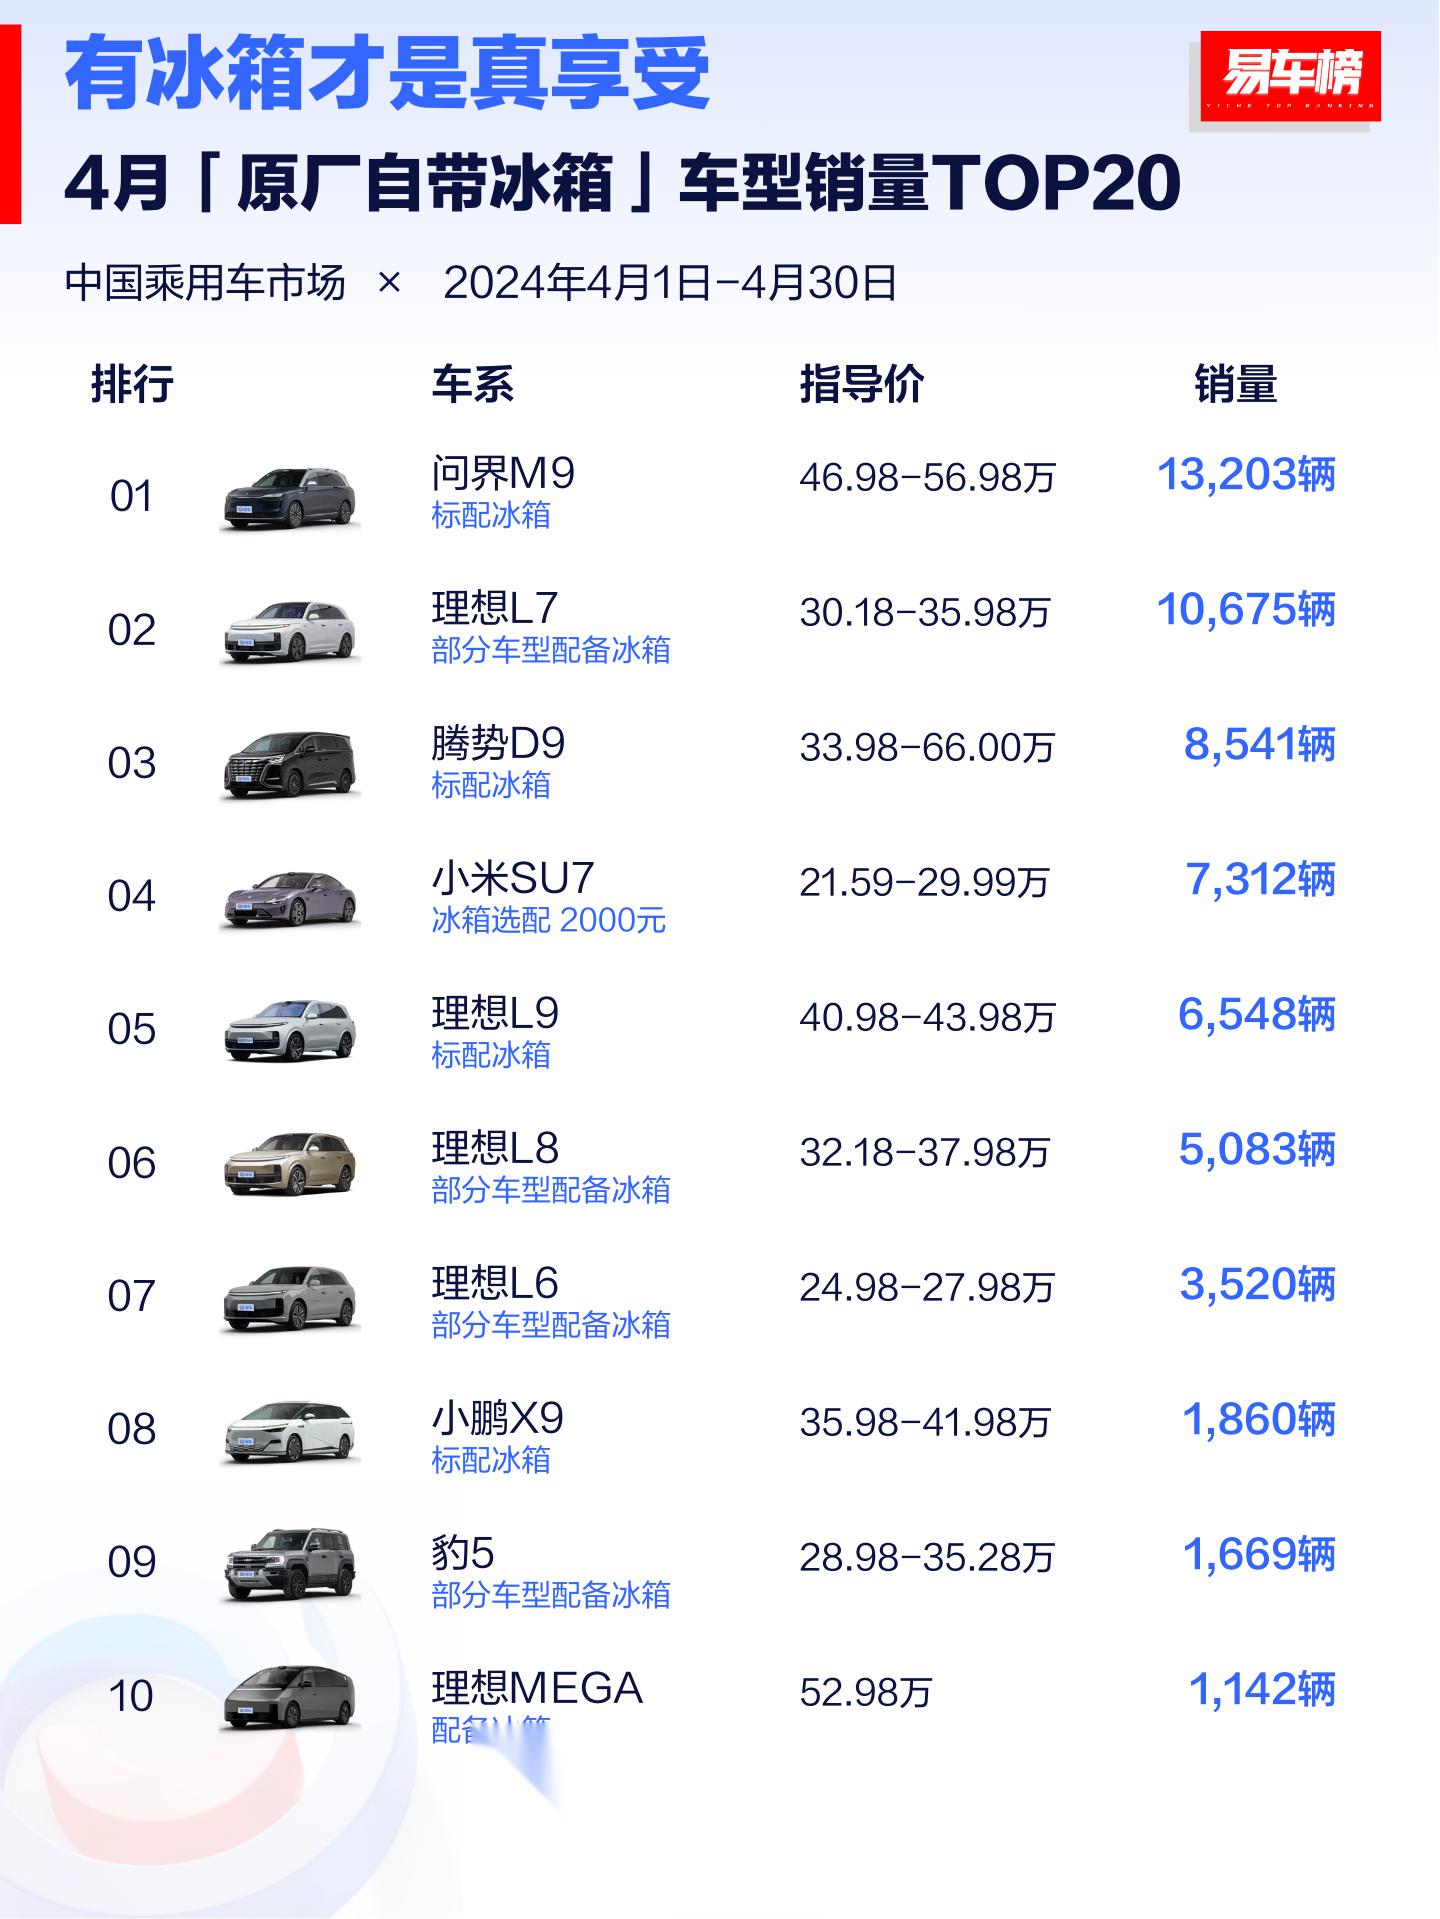 汽车排行榜越来越有意思了,这里又来了个原厂自带冰箱车型销量top20